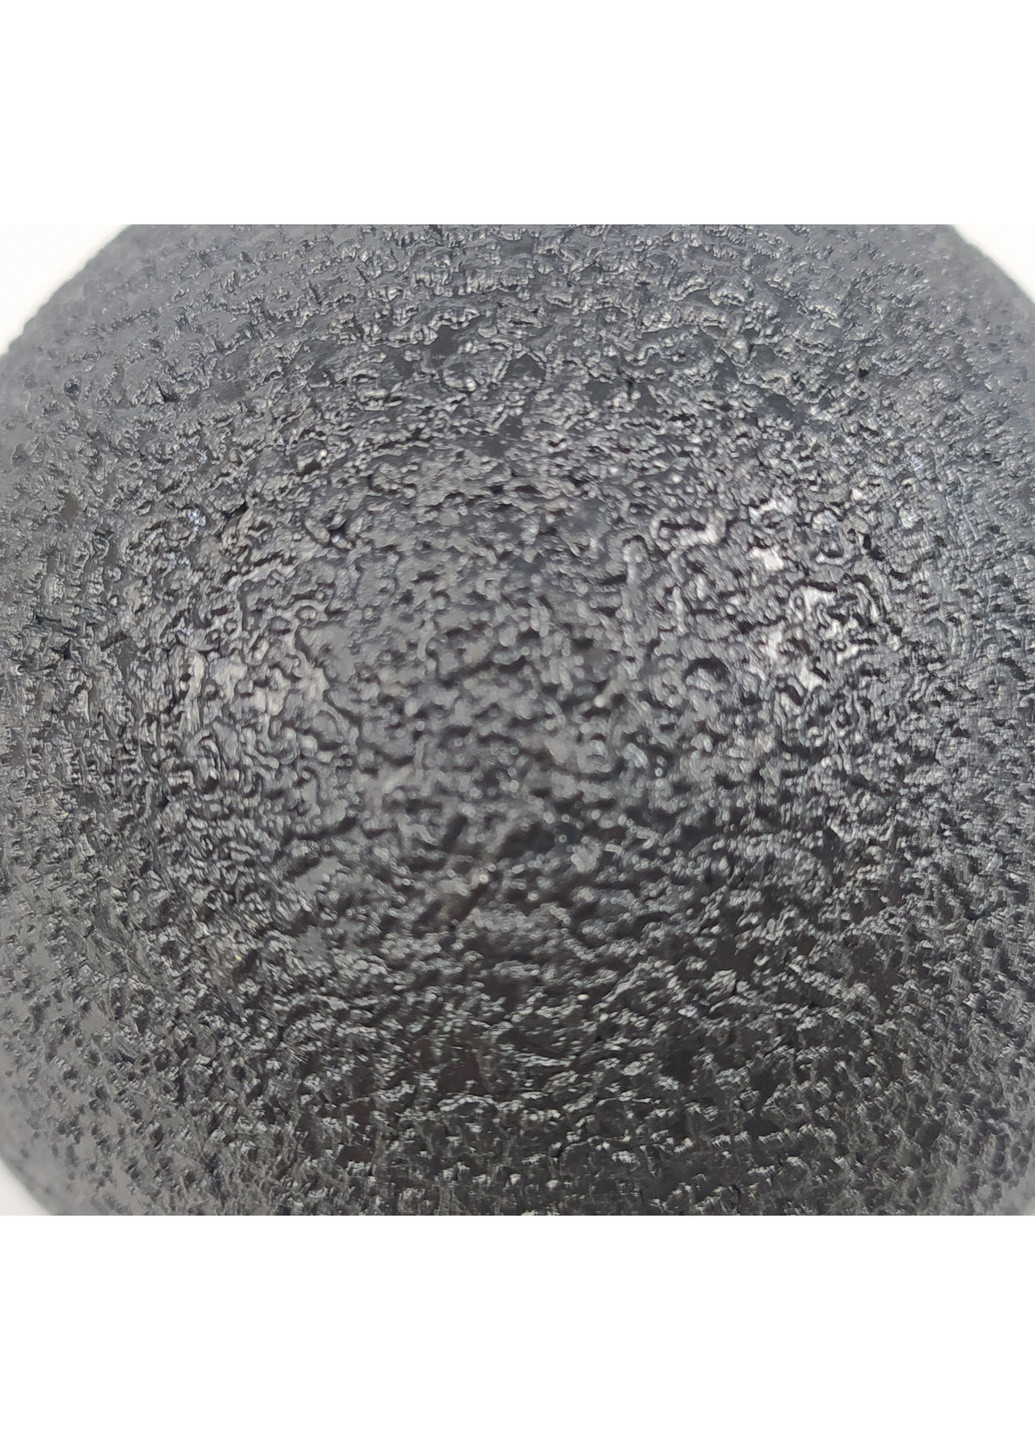 Массажный мячик EPP 8 см черный (ЕПП-мяч для массажа спины, поясницы, рук, ног, миофасциального релиза и самомассажа) EasyFit (243205373)